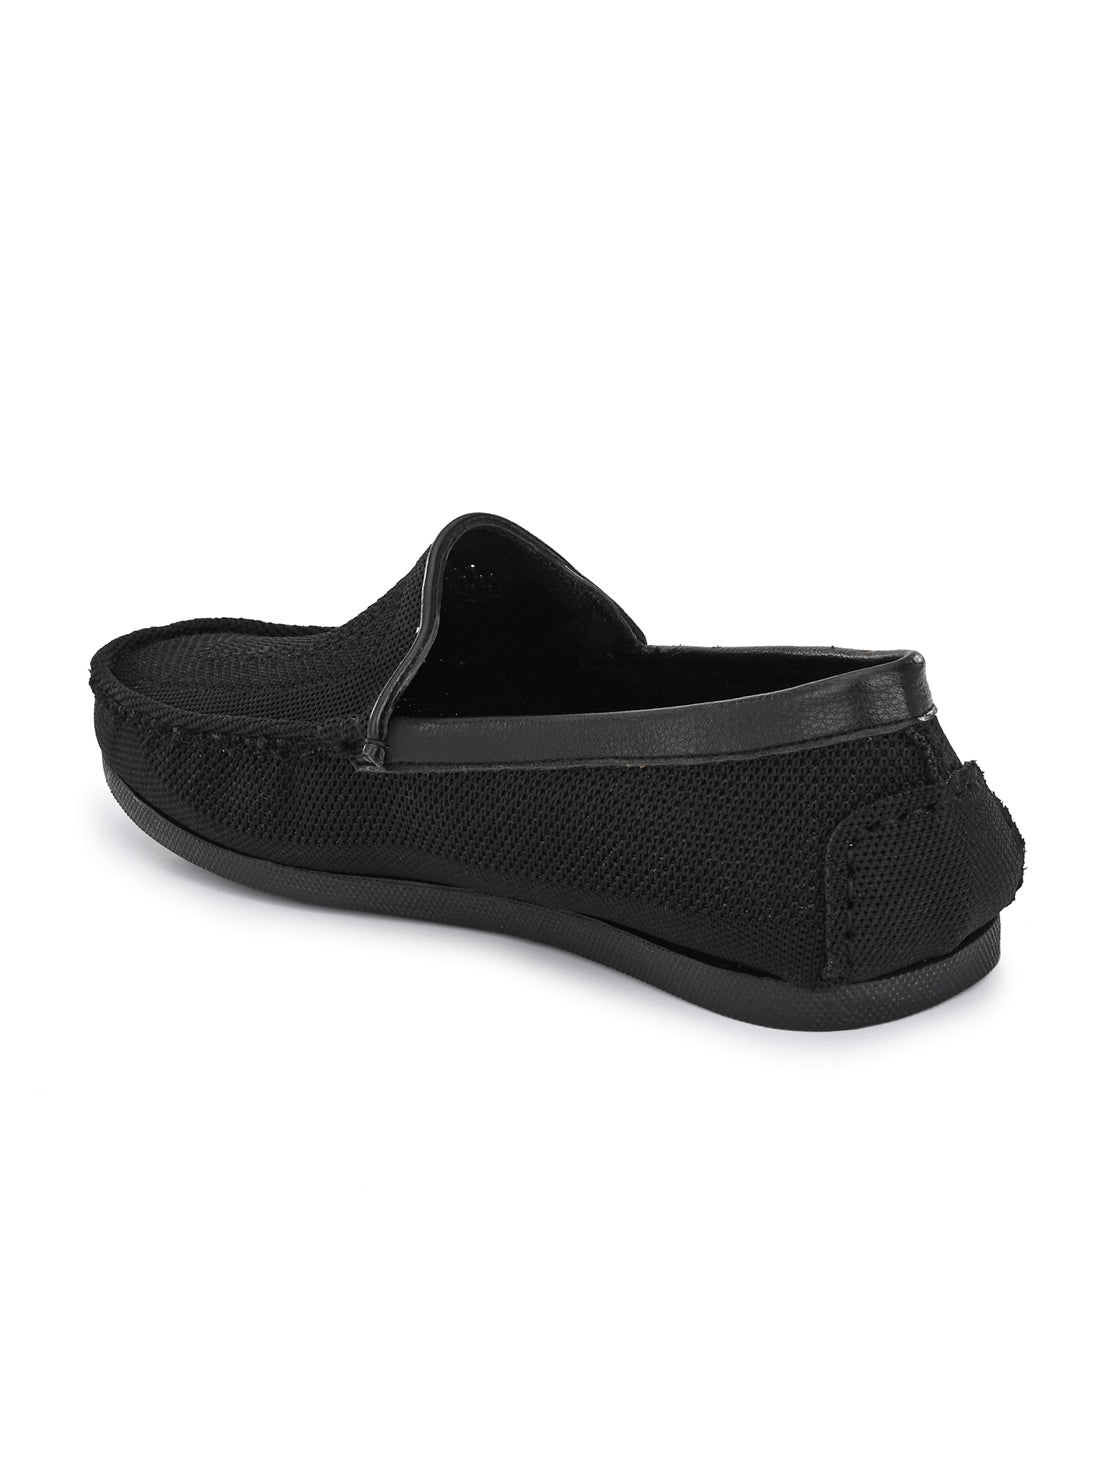 Guava Men's Black Knitted Slip On Driving Loafers (GV15JA760)